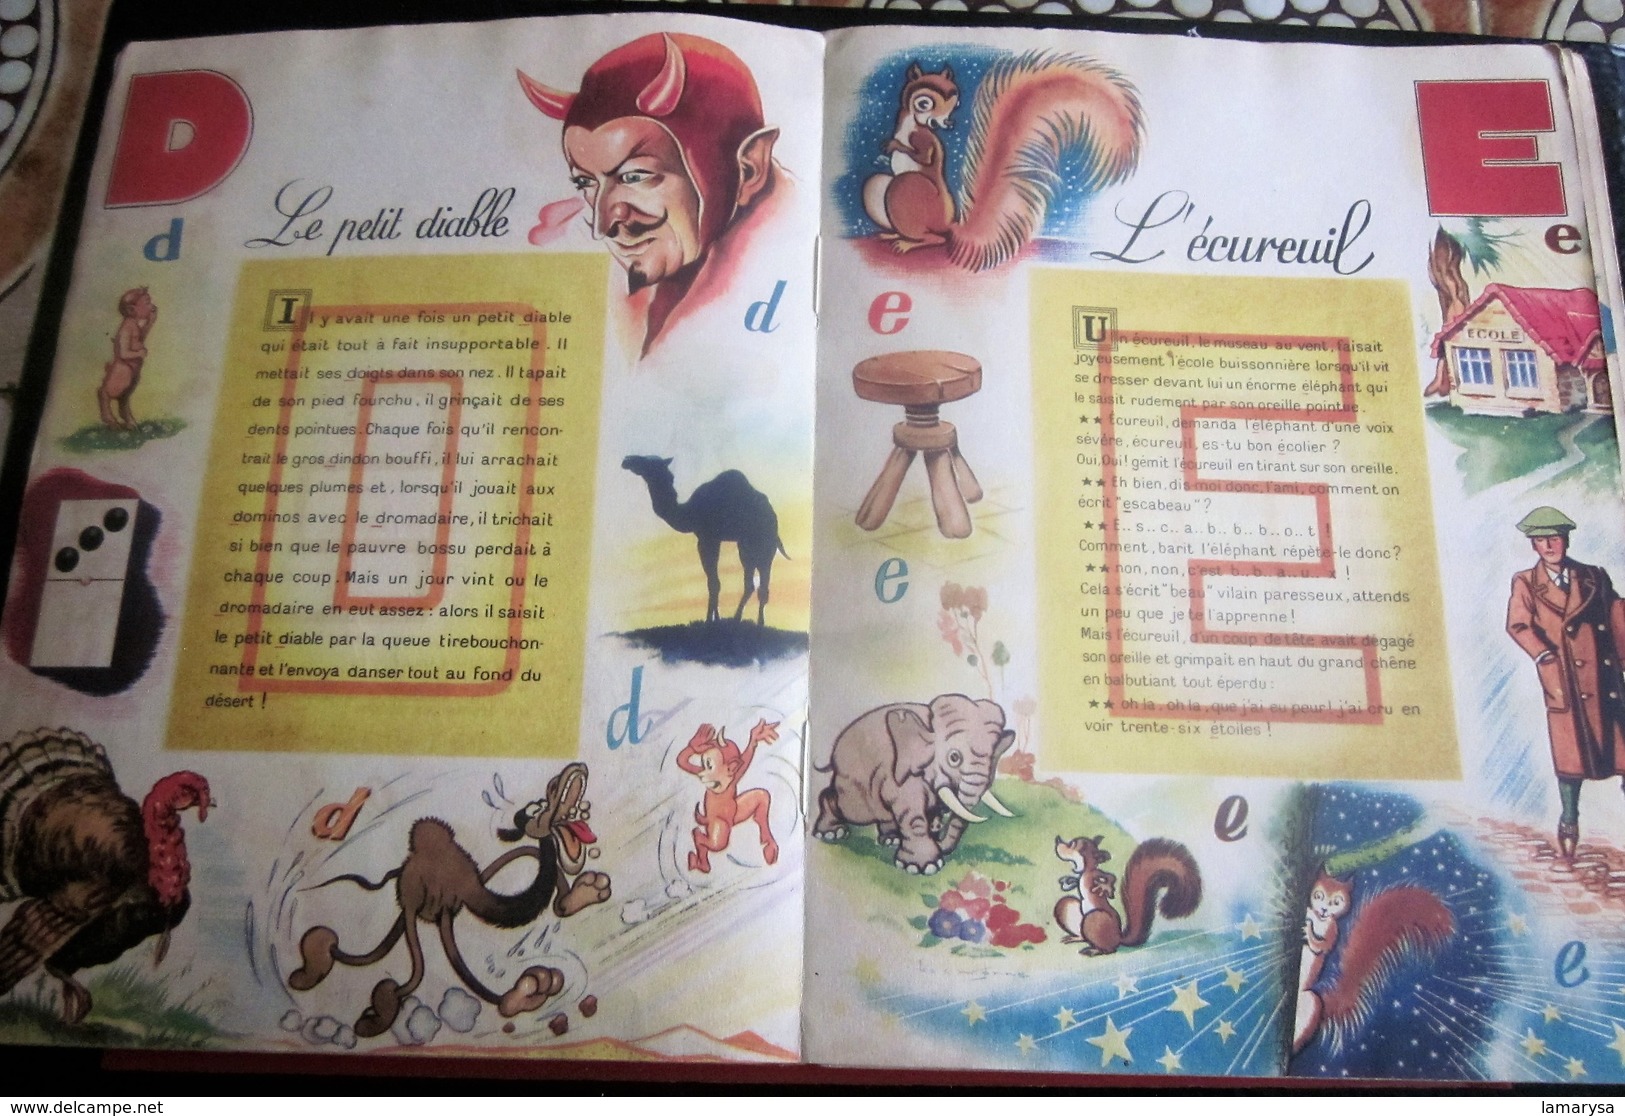 ABC Féerique de 1944 Livre Album éducatif ancien en Français A- Ane- D-Diable-T -Toupie-Y -Youyou-Z-Zebre-Editions Nicéa